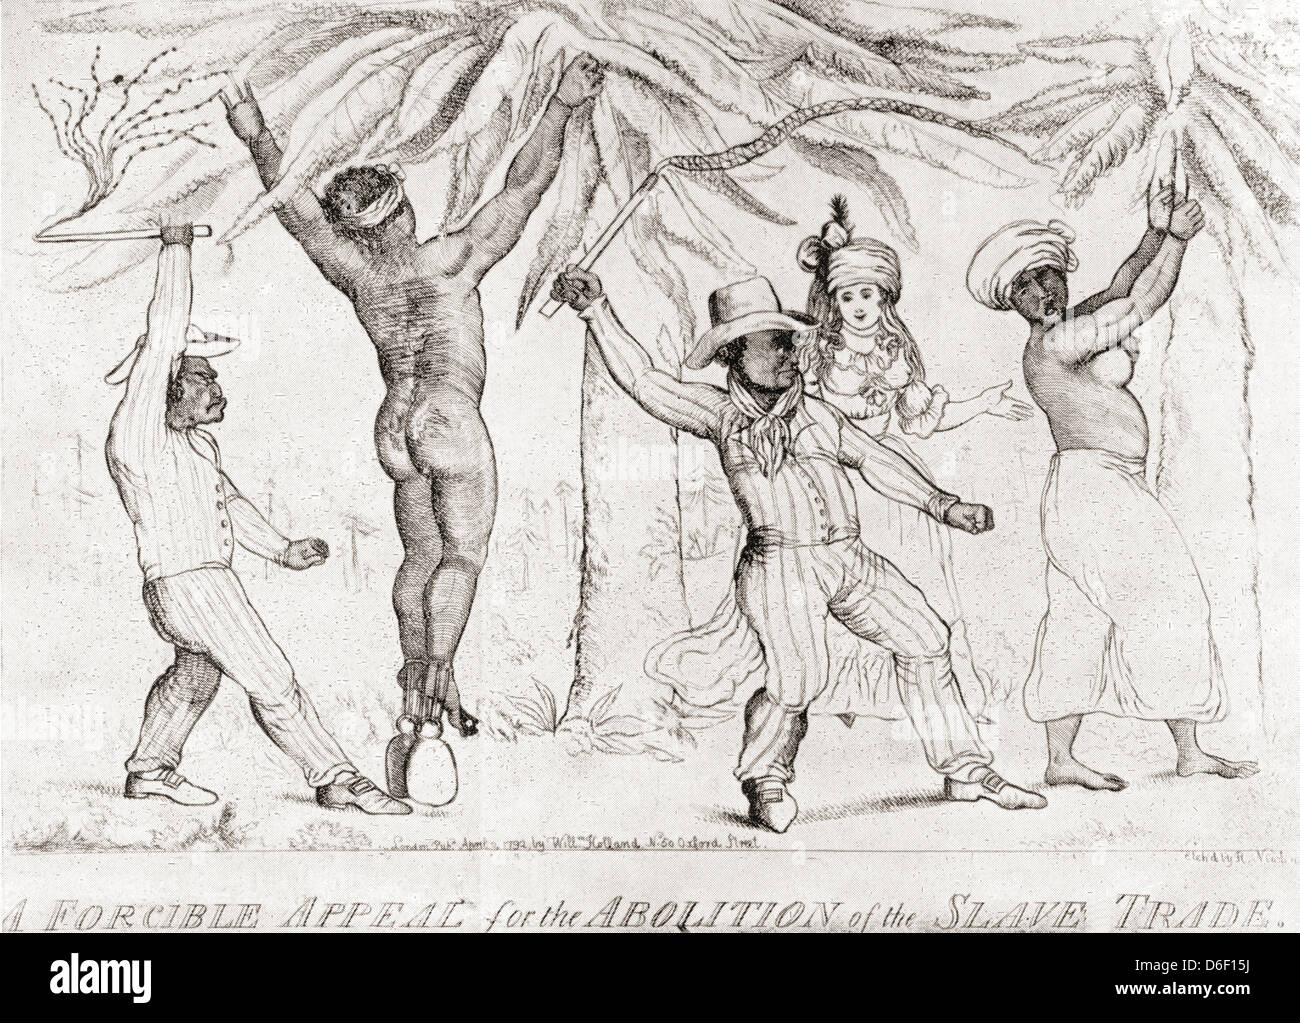 Sklavenhandel im 19. Jahrhundert.  Sklavenhändler, die Sklaven zu bestrafen. Stockfoto